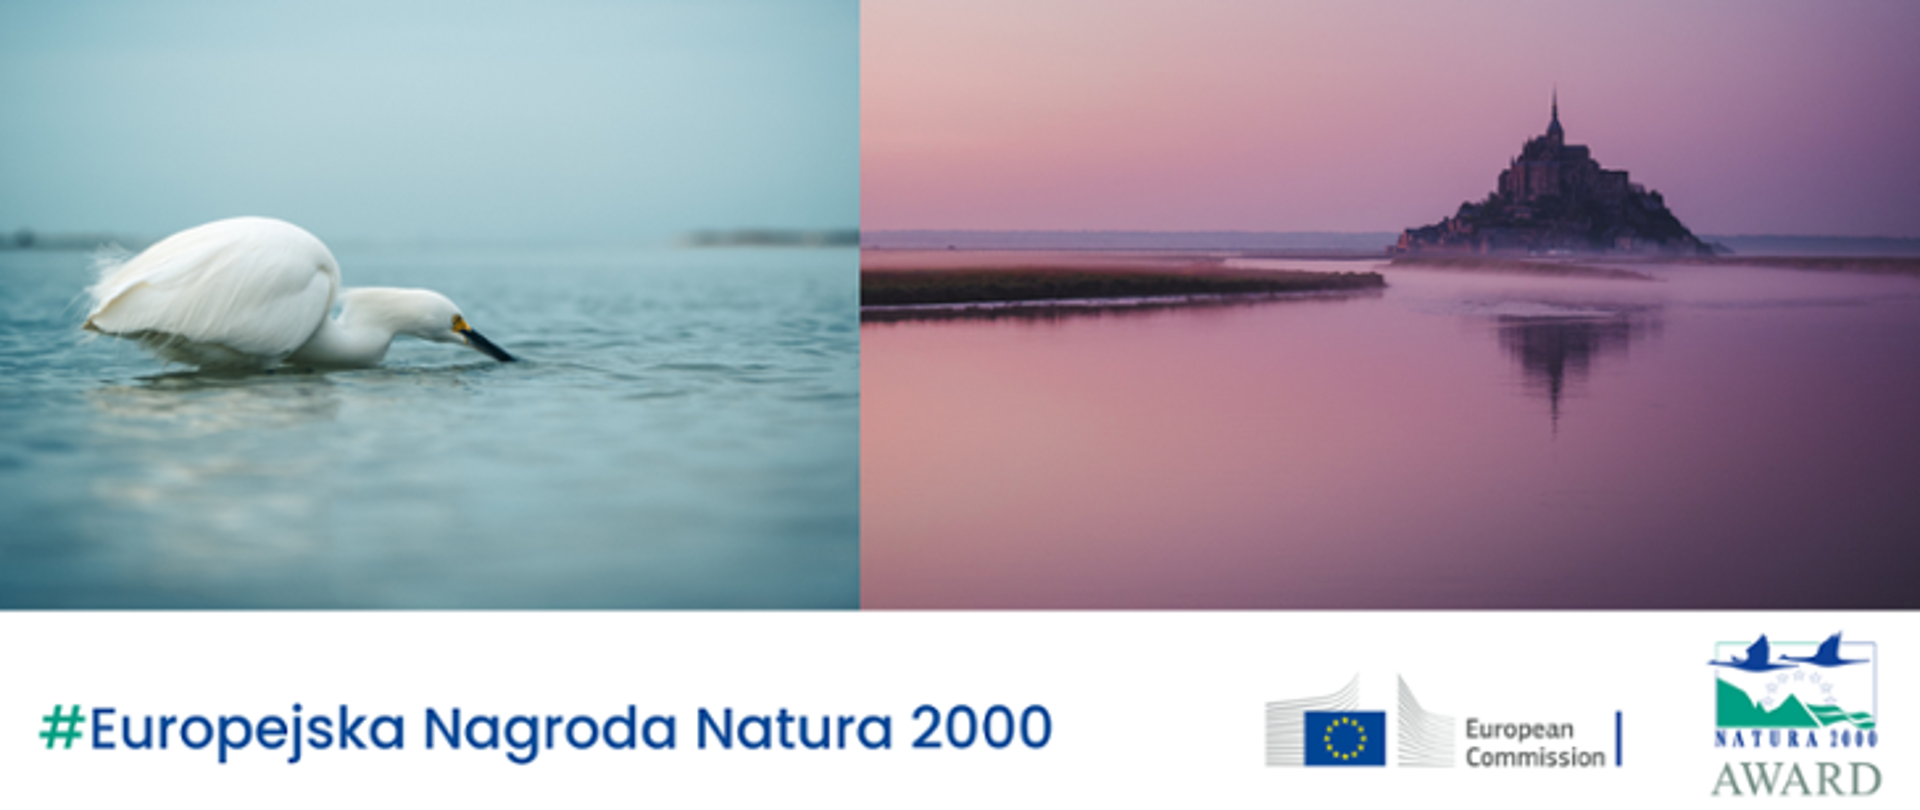 Dwa zdjęcia zestawione ze sobą. Na jednym biały ptak na wodzie, na drugim krajobraz z budowlą typu zamek.
Na dole napis #Europejska Nagroda Natura 2000 i dwa logotypy: Komisji Europejskiej i Europejskiej Nagrody Natura 2000